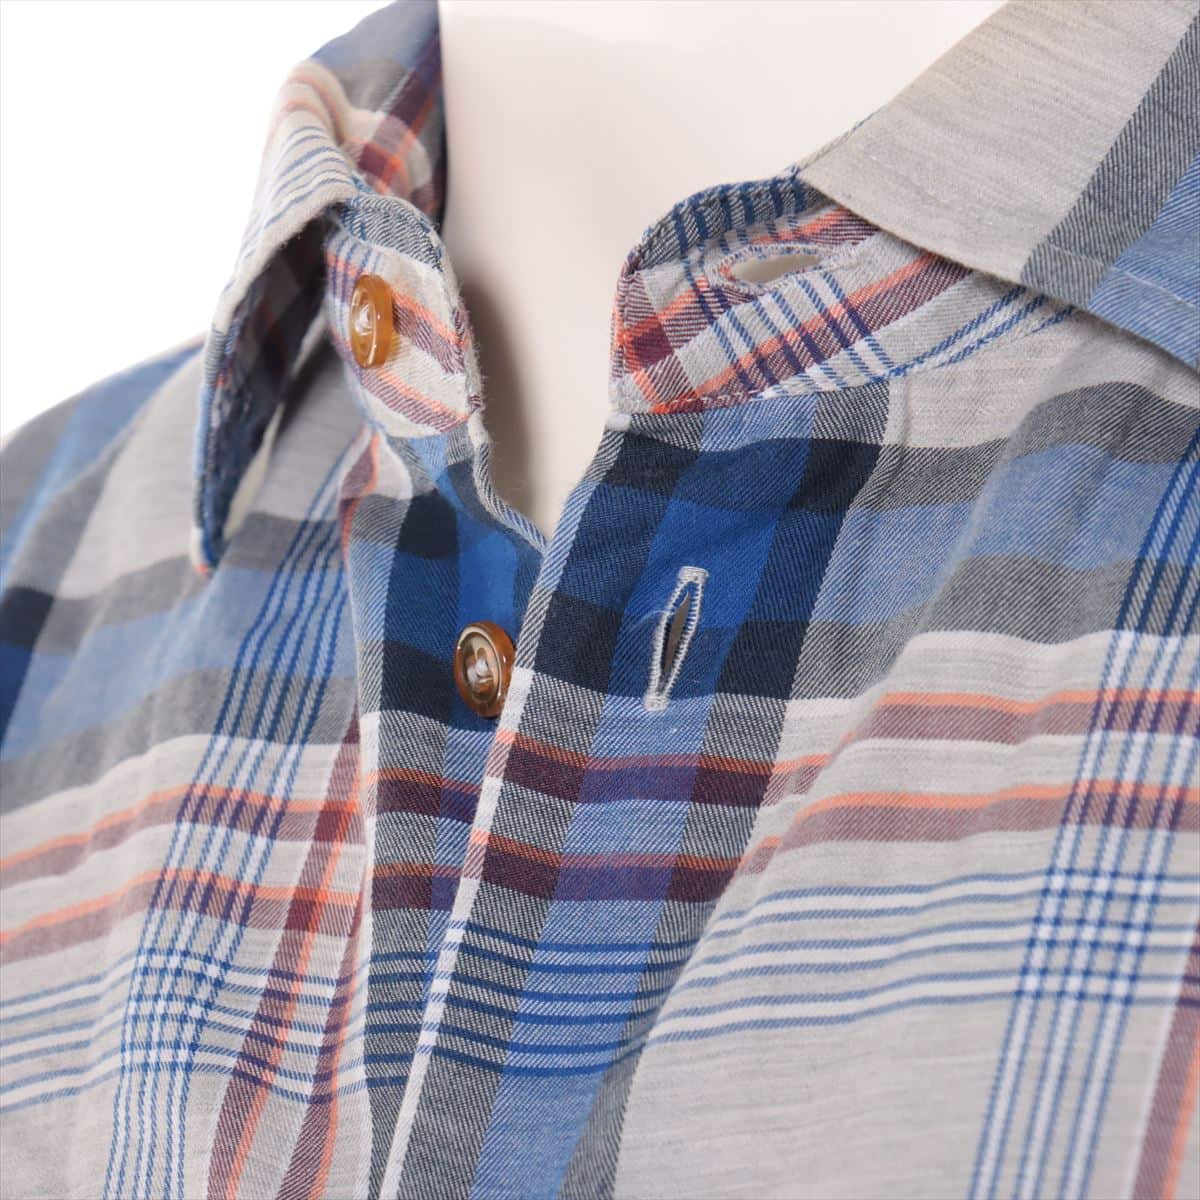 Vivienne Westwood MAN Cotton Checked shirt 46 Men's Blue